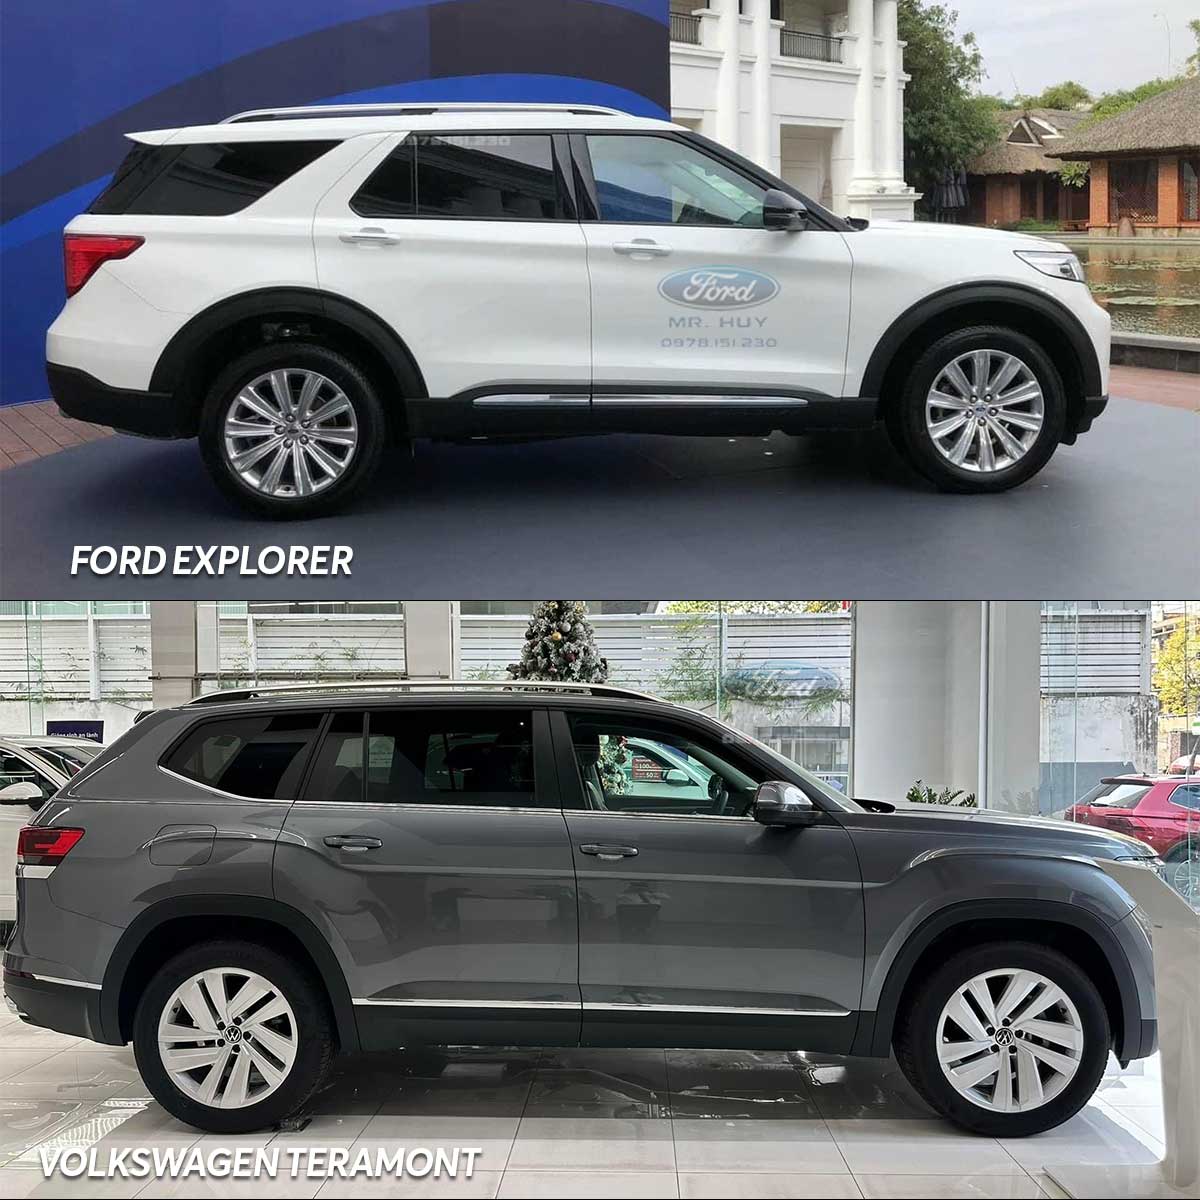 So sánh Ford Explorer và Volkswagen Teramont - Thiết kế ngoại thất: vị trí thân xe